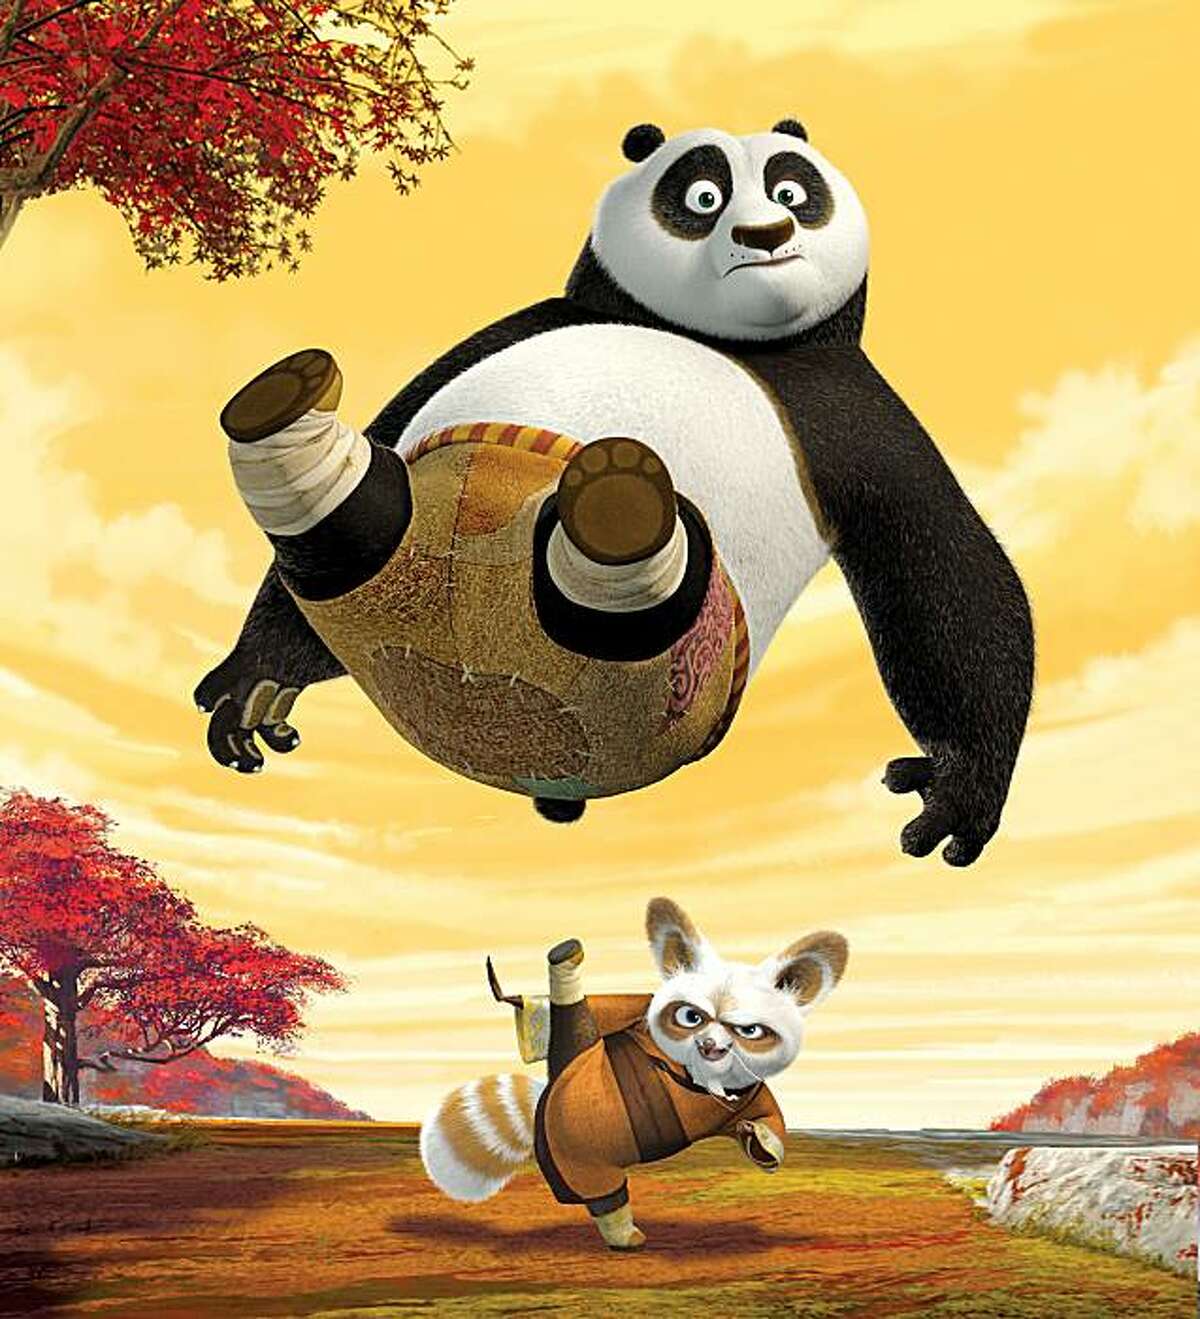 Review: 'Kung Fu Panda' kicks up the comedy